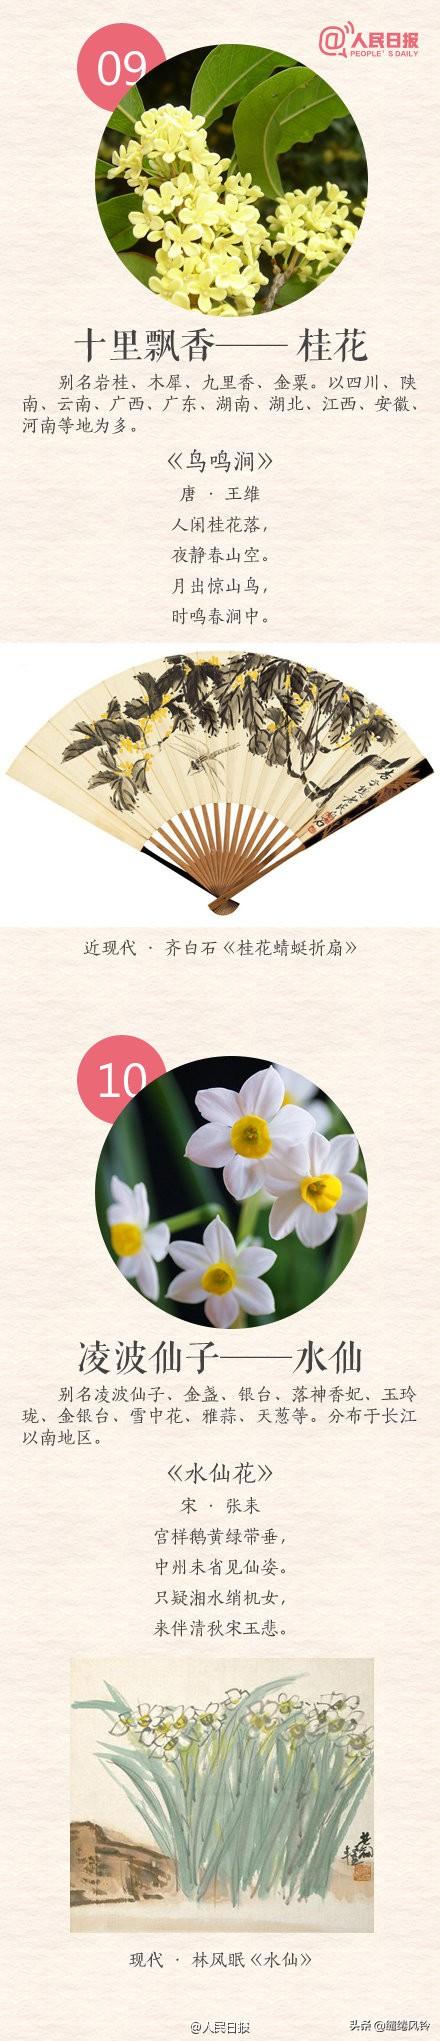 中国传统十大名花(花卉植物大全排名)插图8